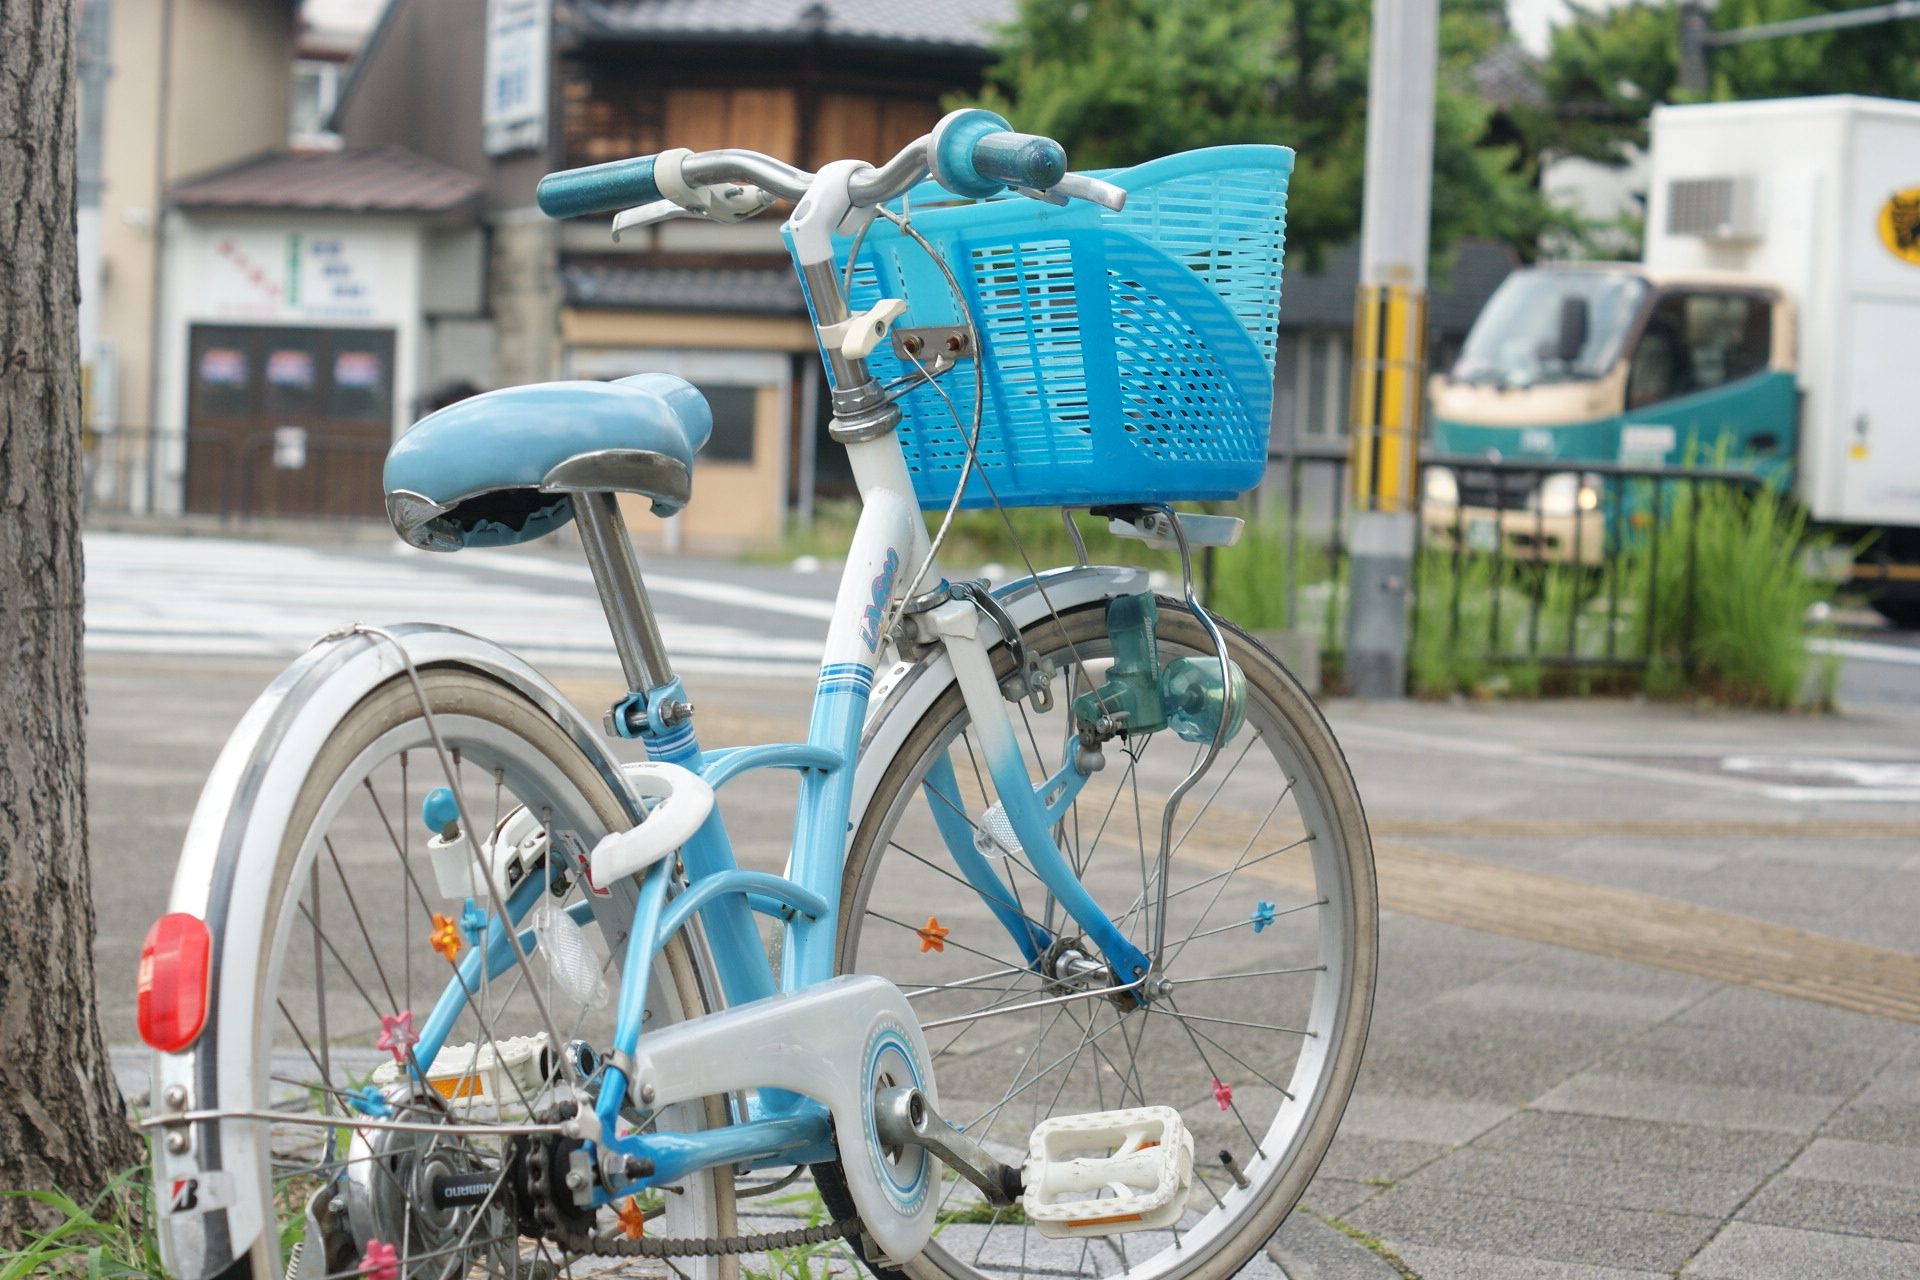 【お子さんの練習用にどうでしょう】中古子供自転車紹介 | 京都の中古自転車・新車販売 サイクルショップ エイリン